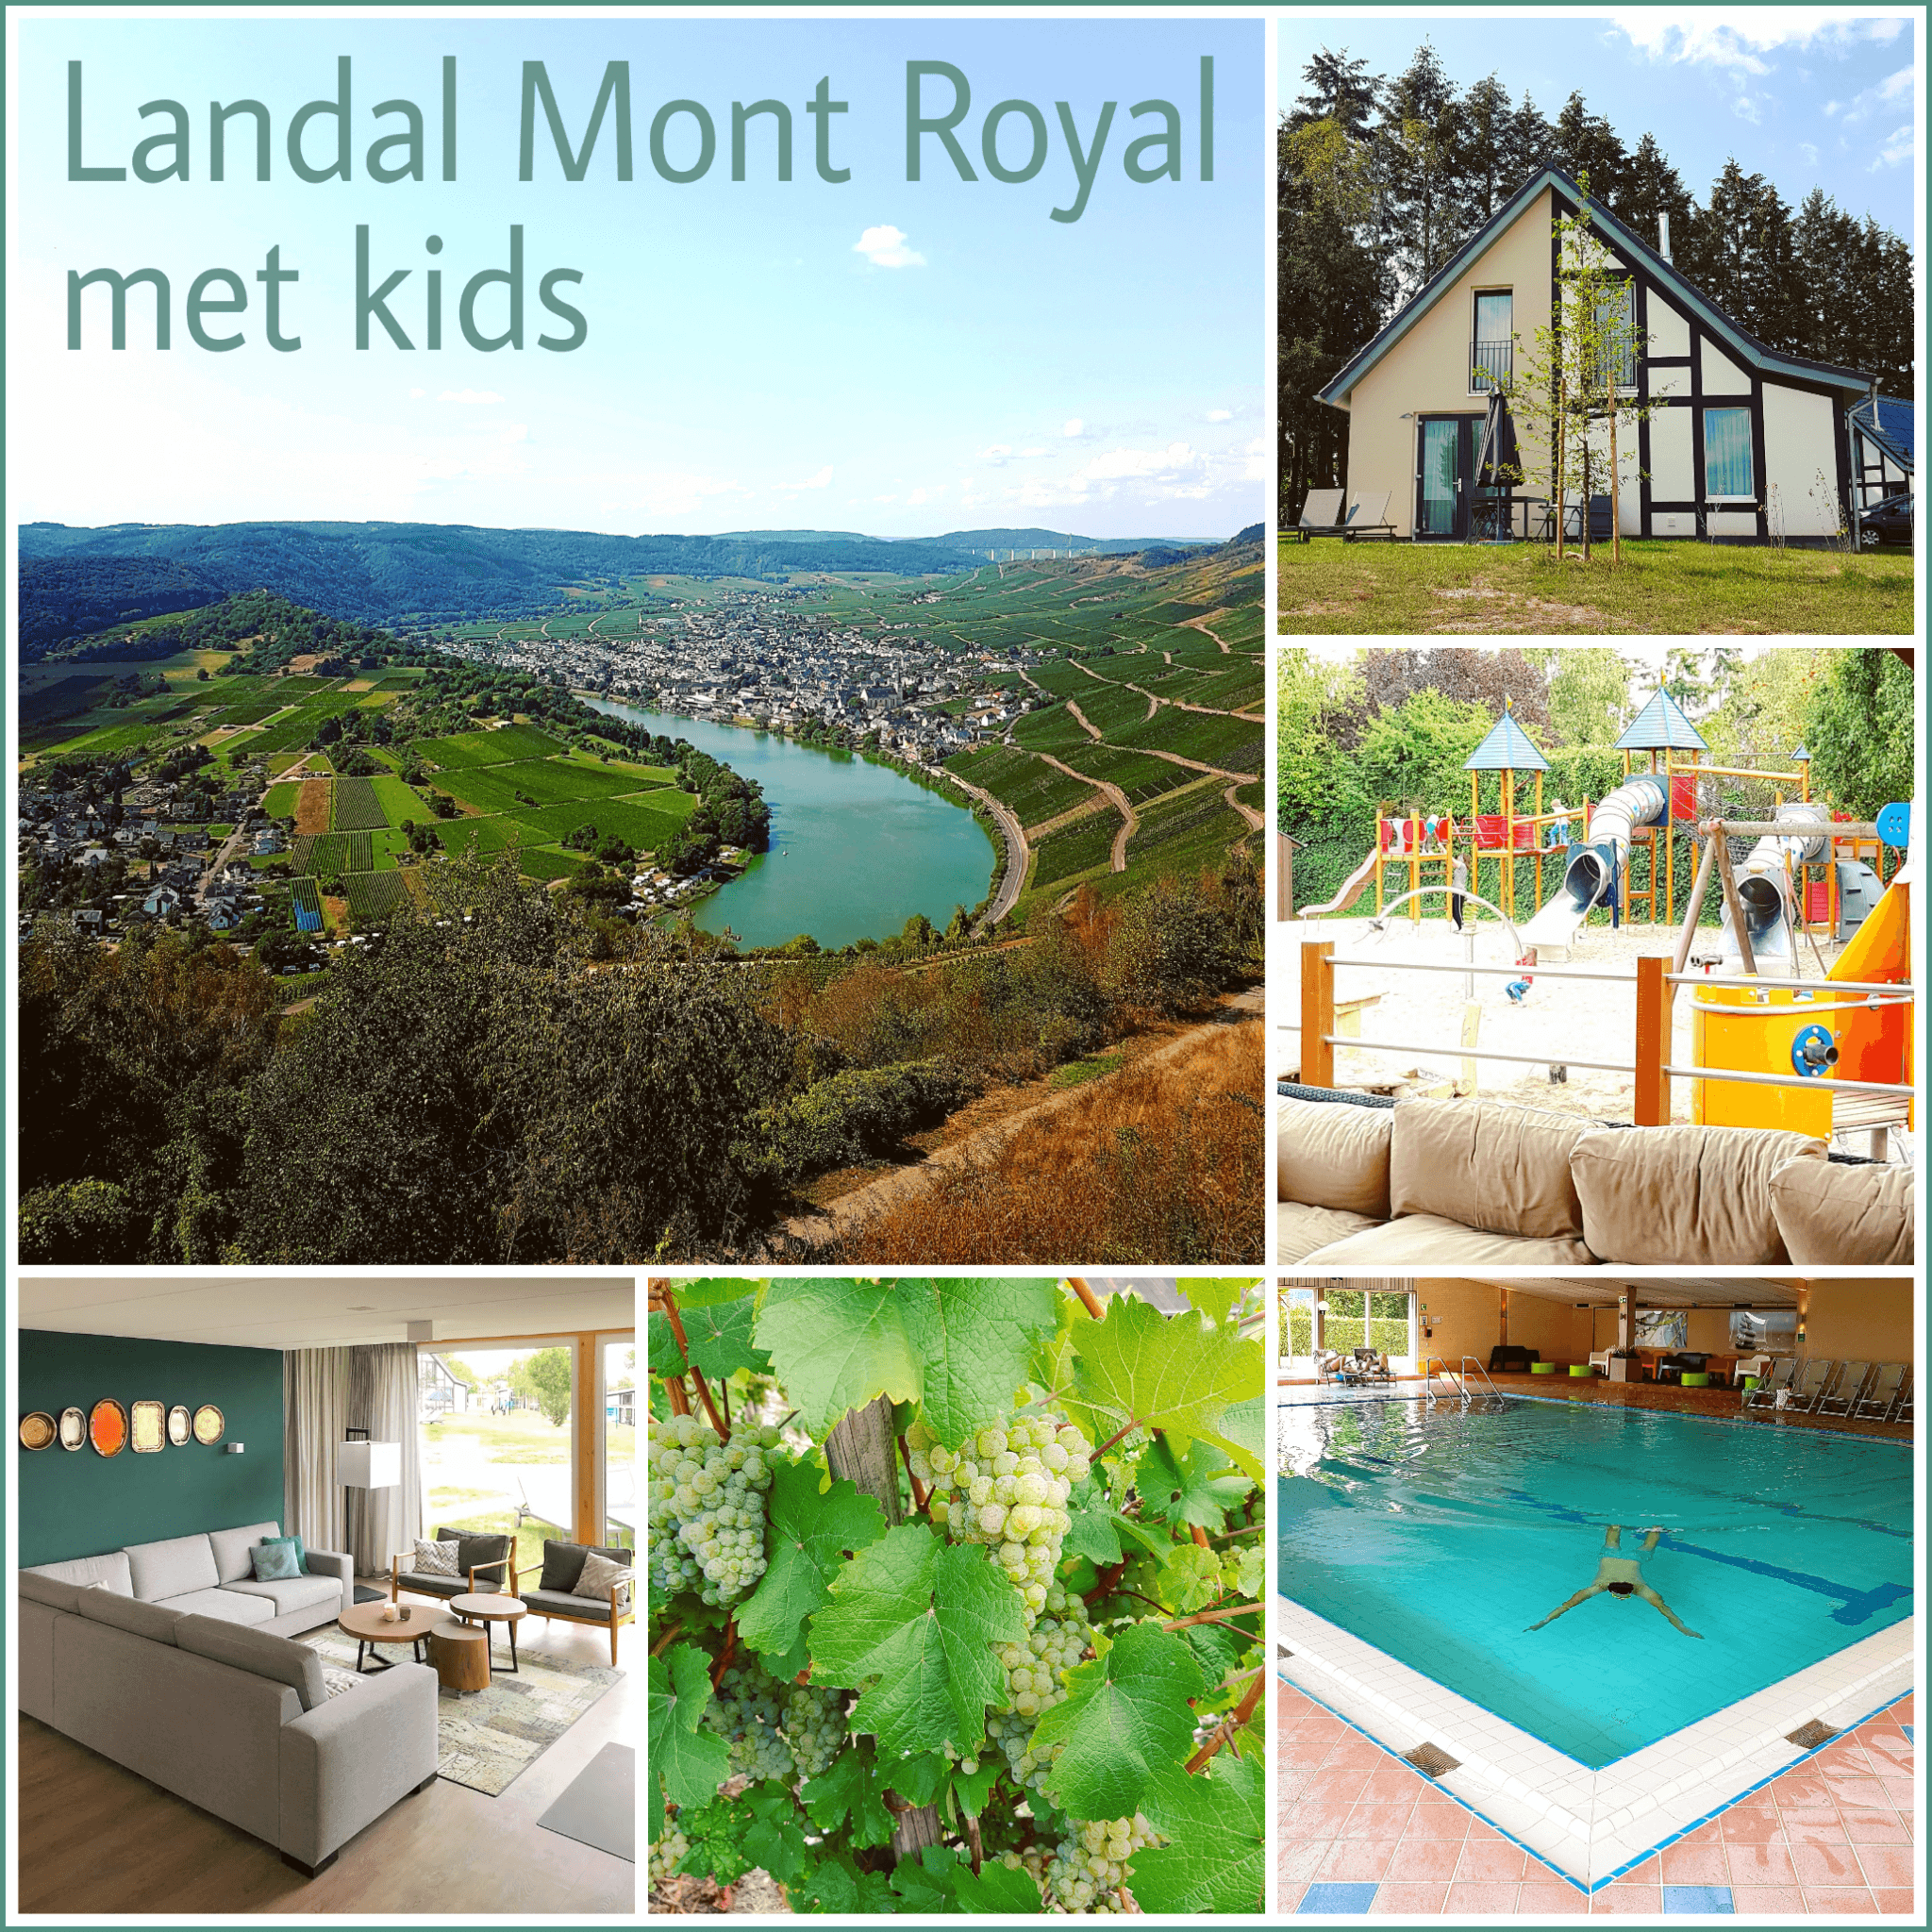 Landal Mont Royal: spelen, zwemmen en wijnproeven met een panoramisch uitzicht #leukmetkids #Landal #Duitsland #Moezel